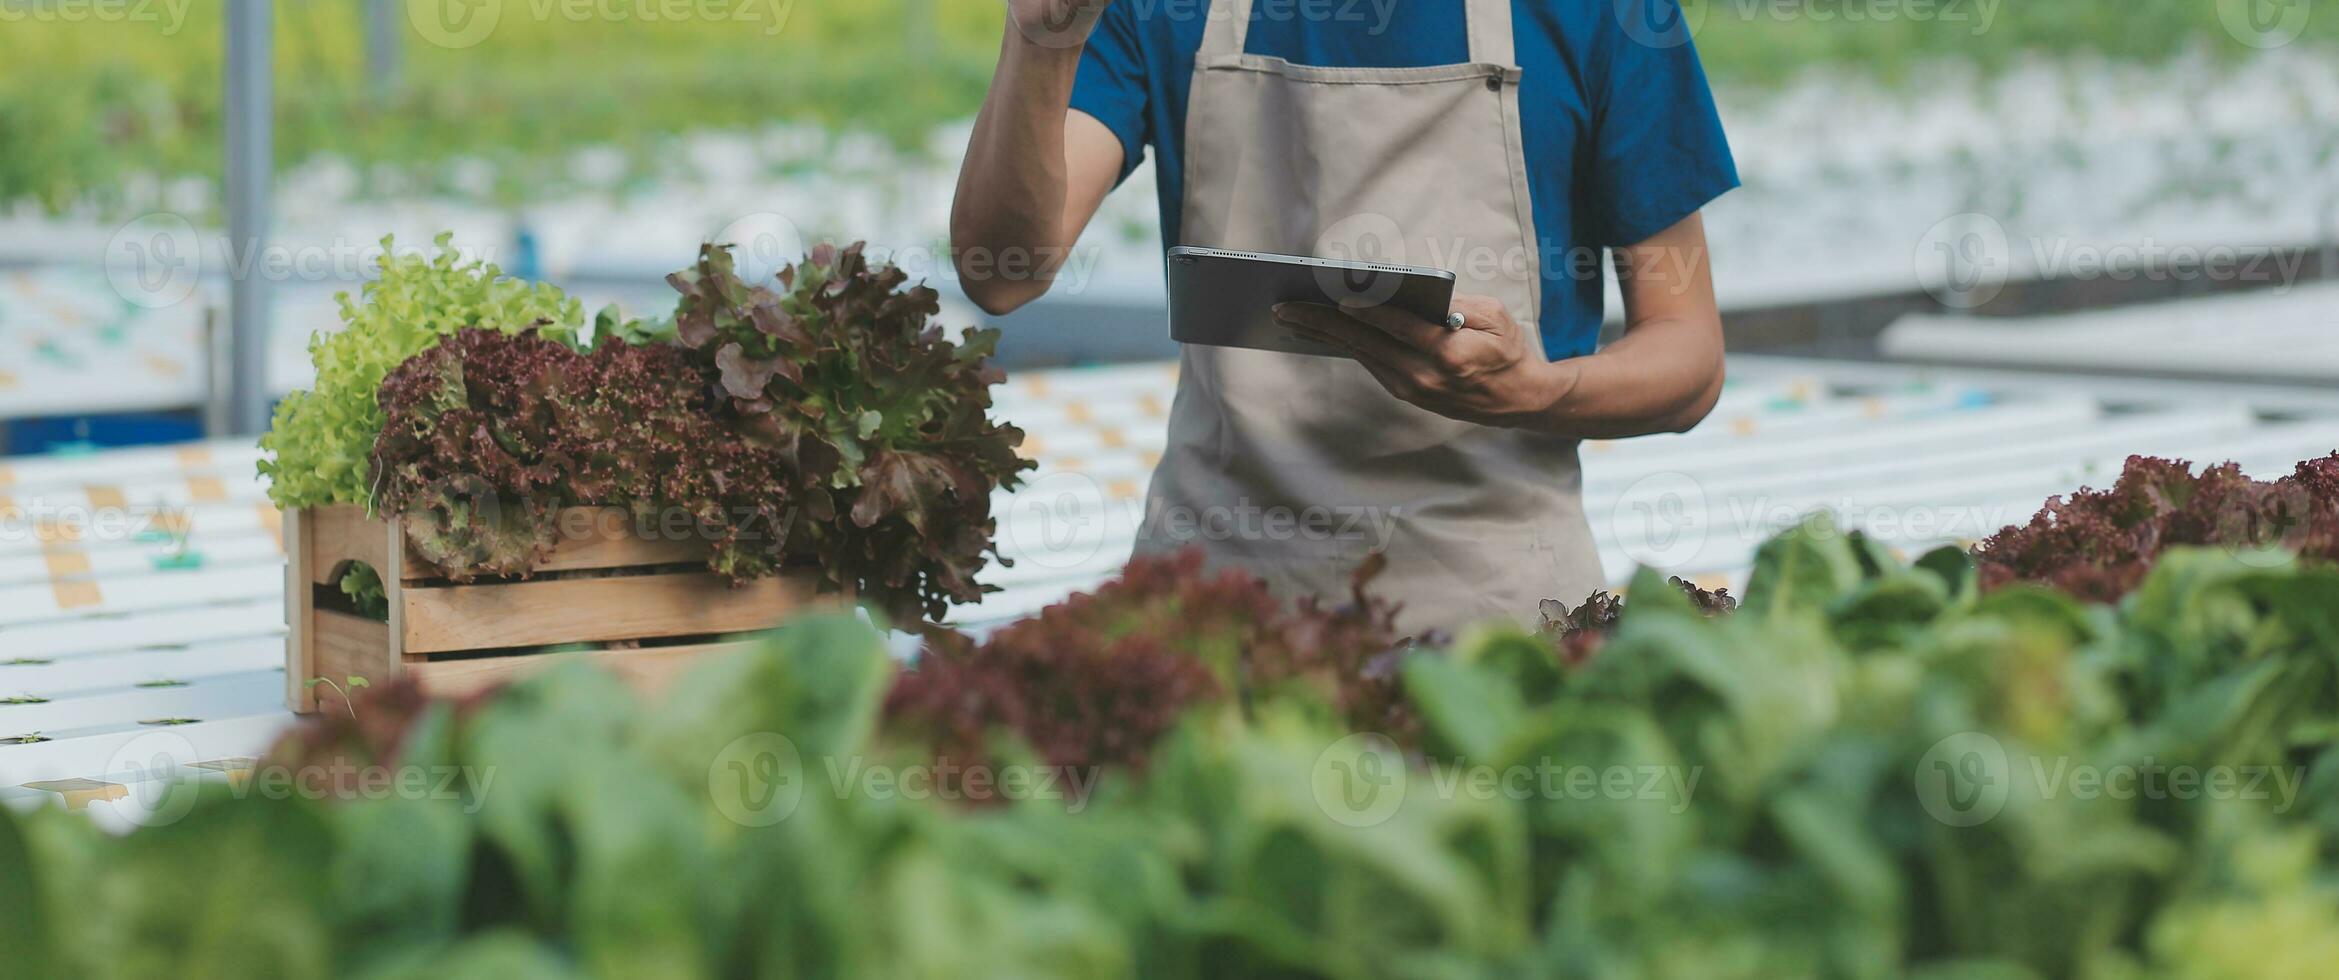 Bauern verwenden Nonius Bremssättel zu messen Gemüse zu Spur ihr Wachstum im Pflanze Kindergarten Bauernhof. Clever Landwirtschaft Technologie Konzept. foto